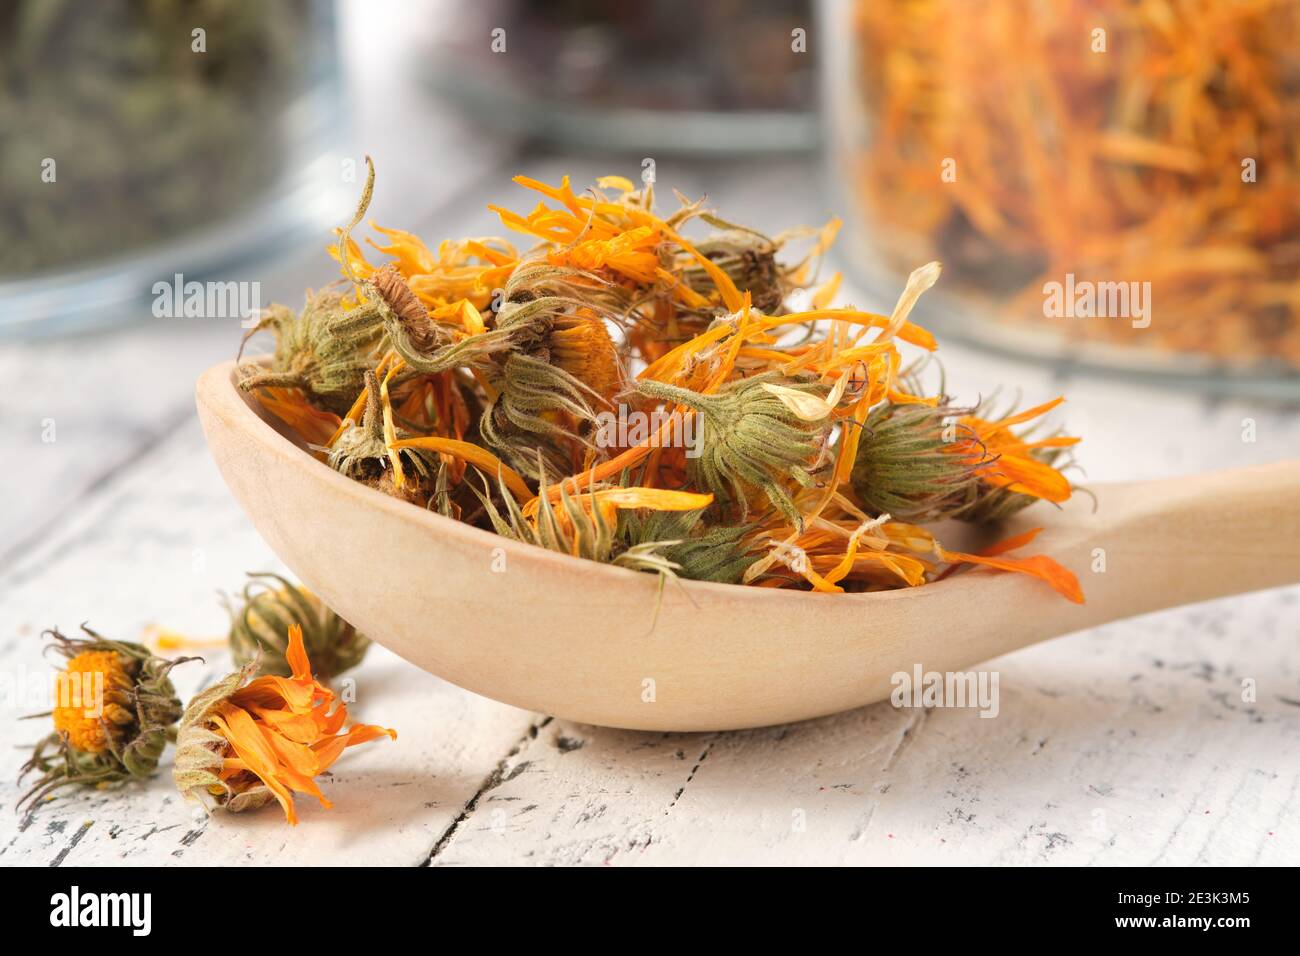 Holzlöffel getrocknete gesunde Ringelblume Blumen. Glasgefäße mit getrockneten Ringelblumenblättern und Heilkräutern auf dem Hintergrund. Alternative Medizin. Stockfoto